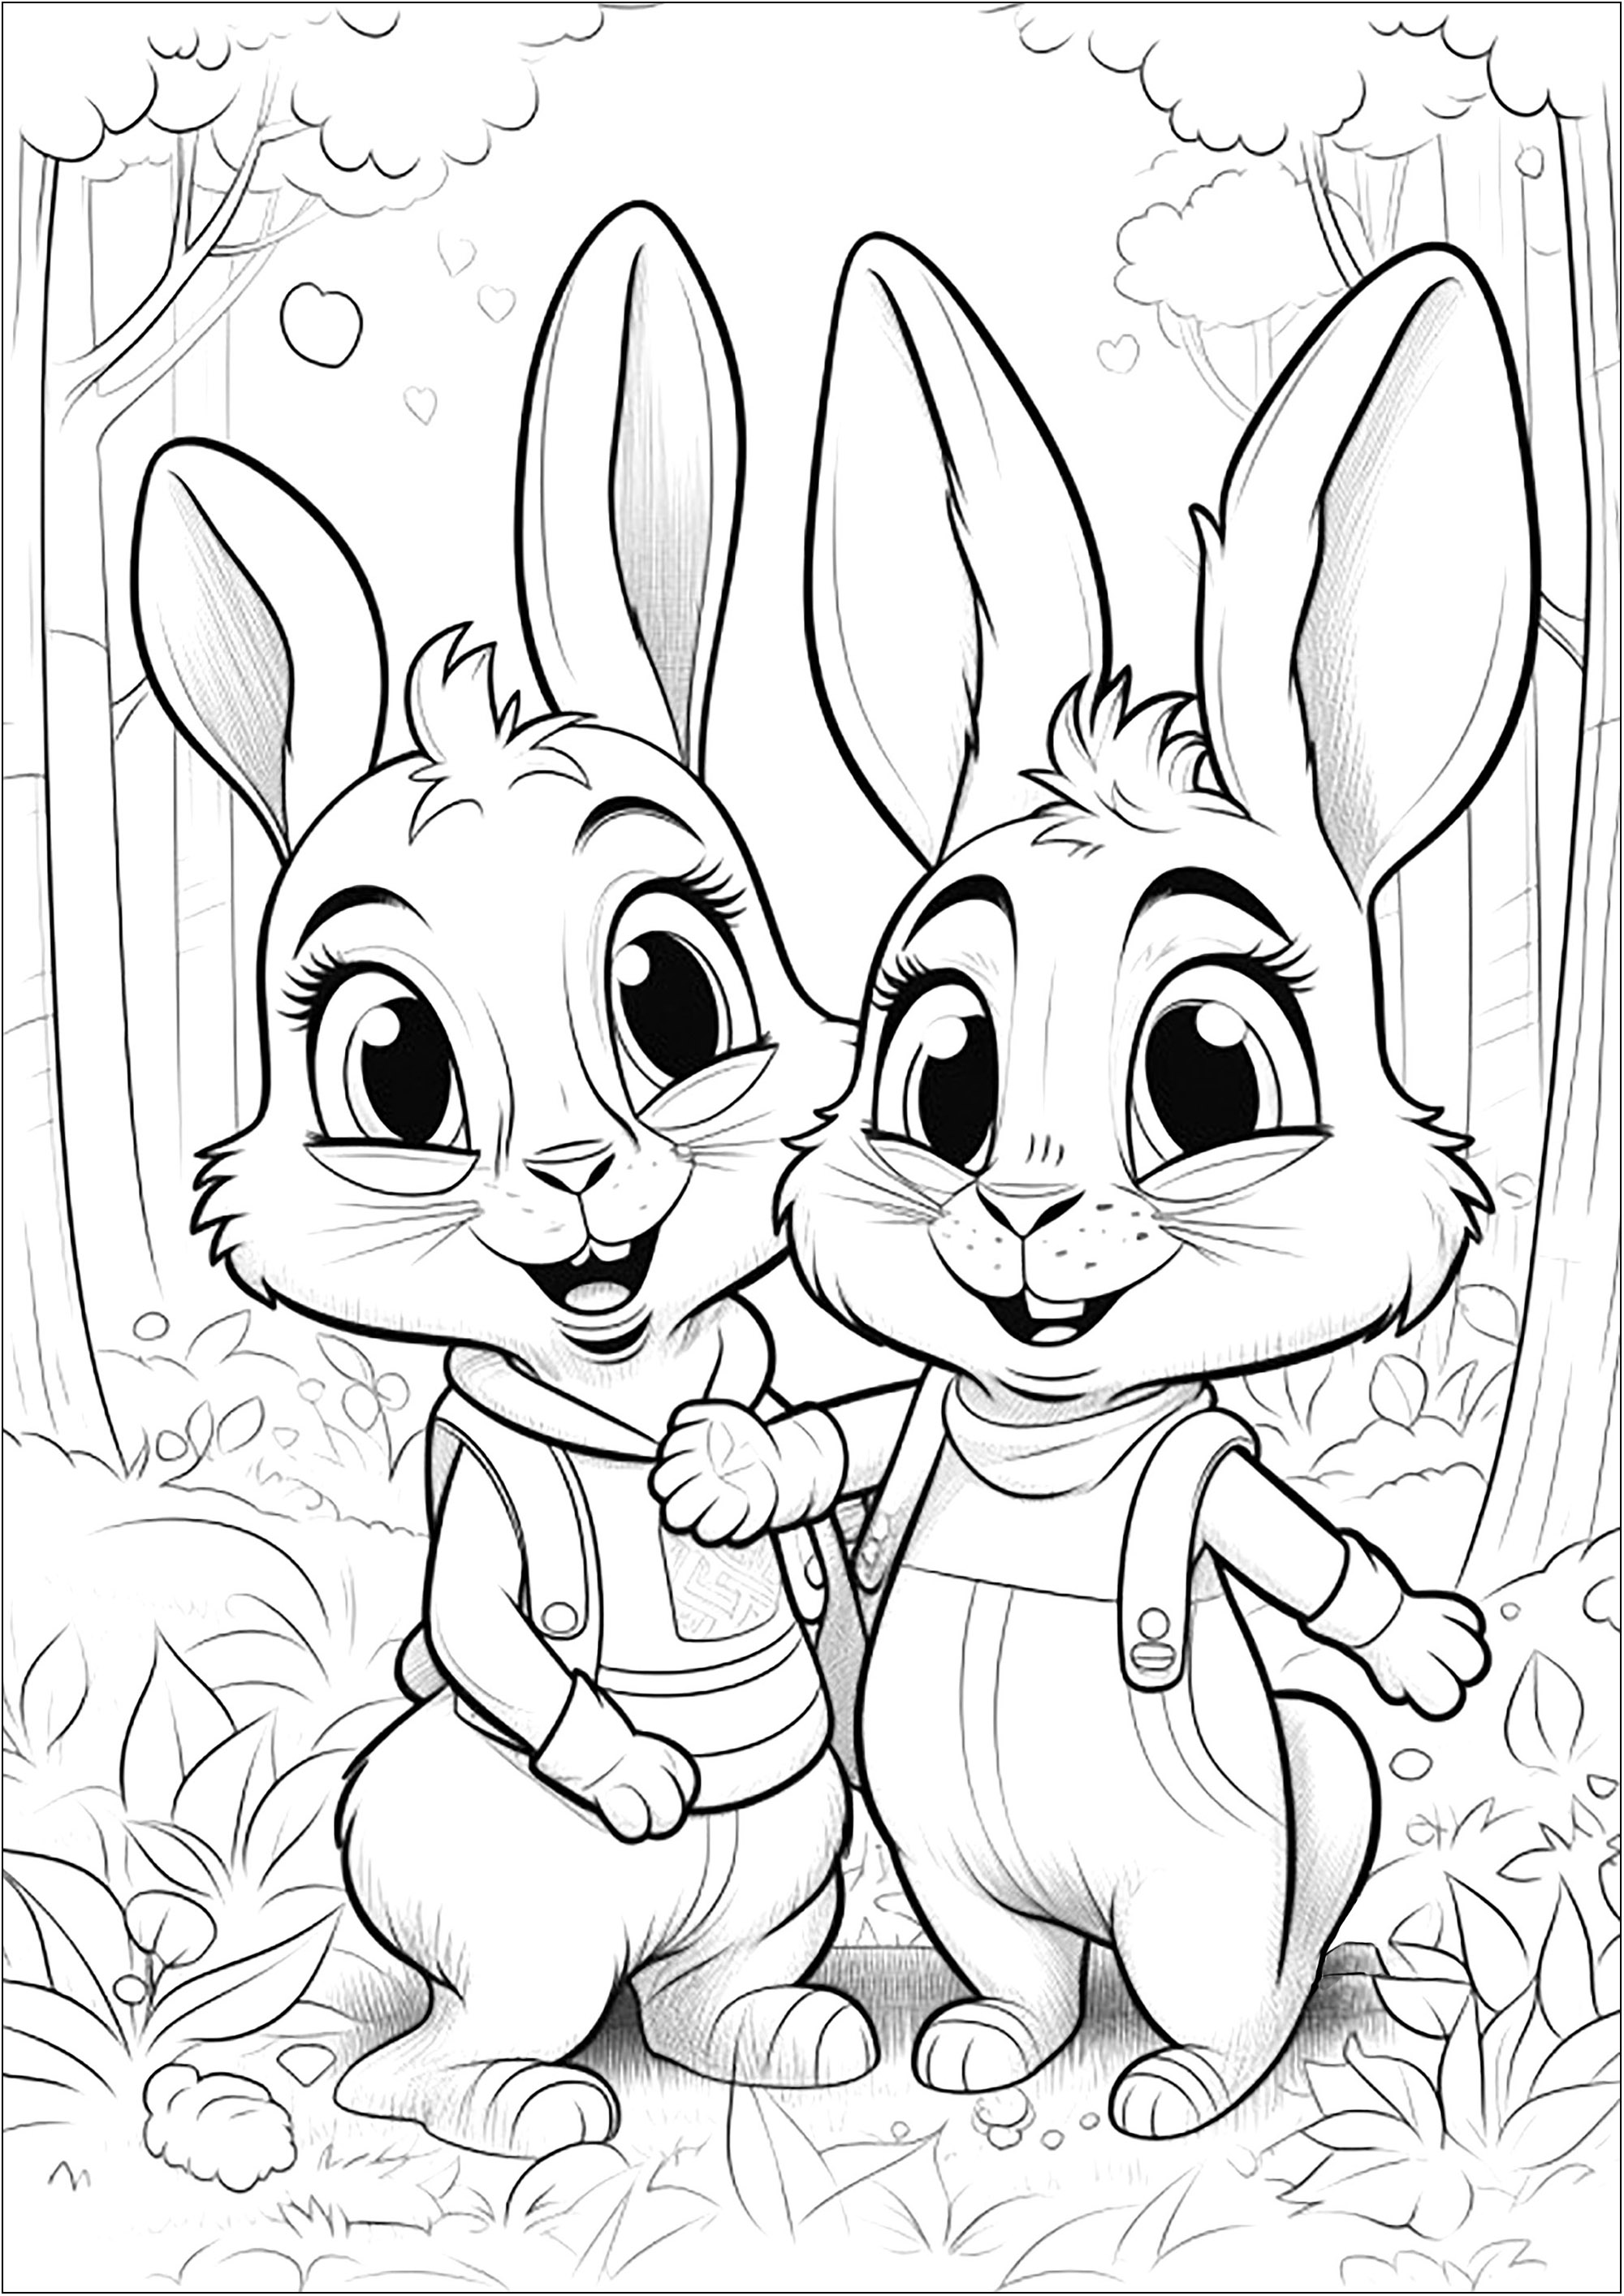 Dos pequeños Conejos en el bosque - 2. Bonito colorido de dos simpáticos Conejos jugando en el bosque